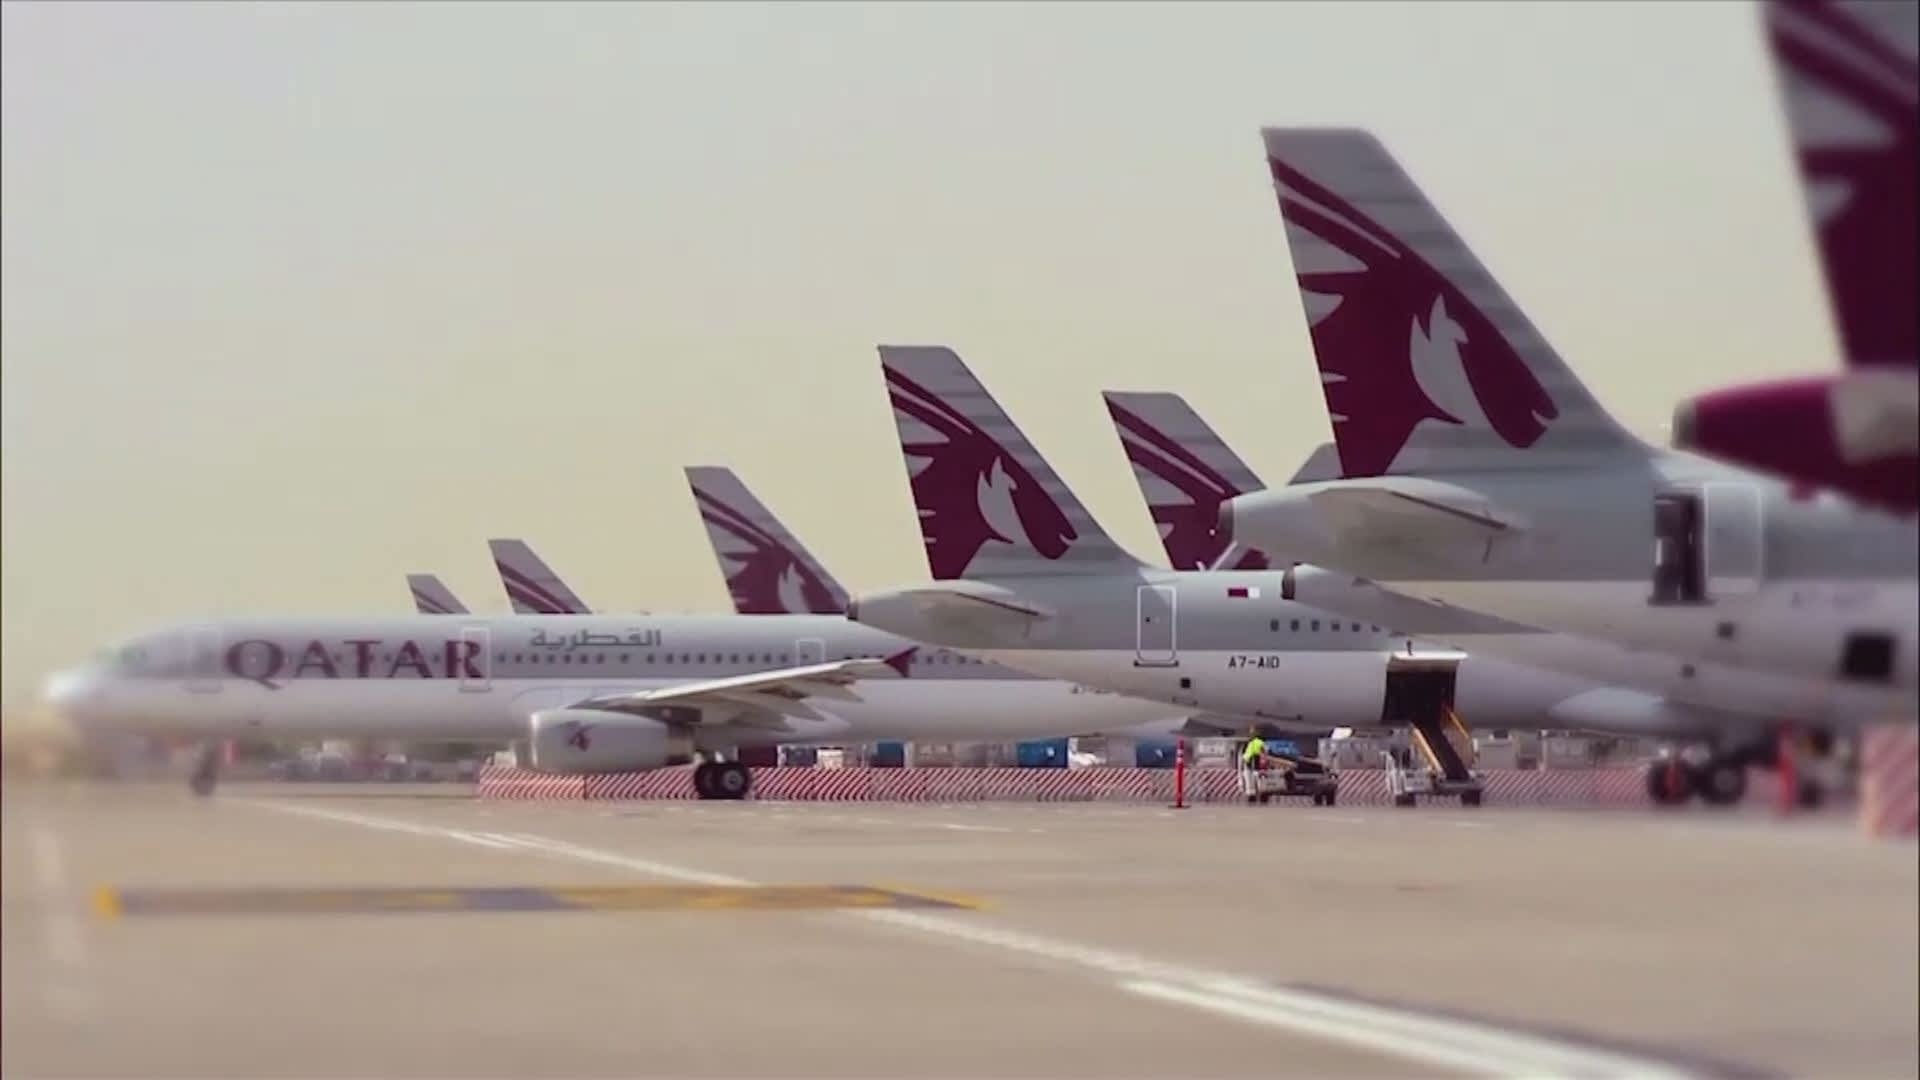 Farnborough Airshow: Qatar Airways CEO